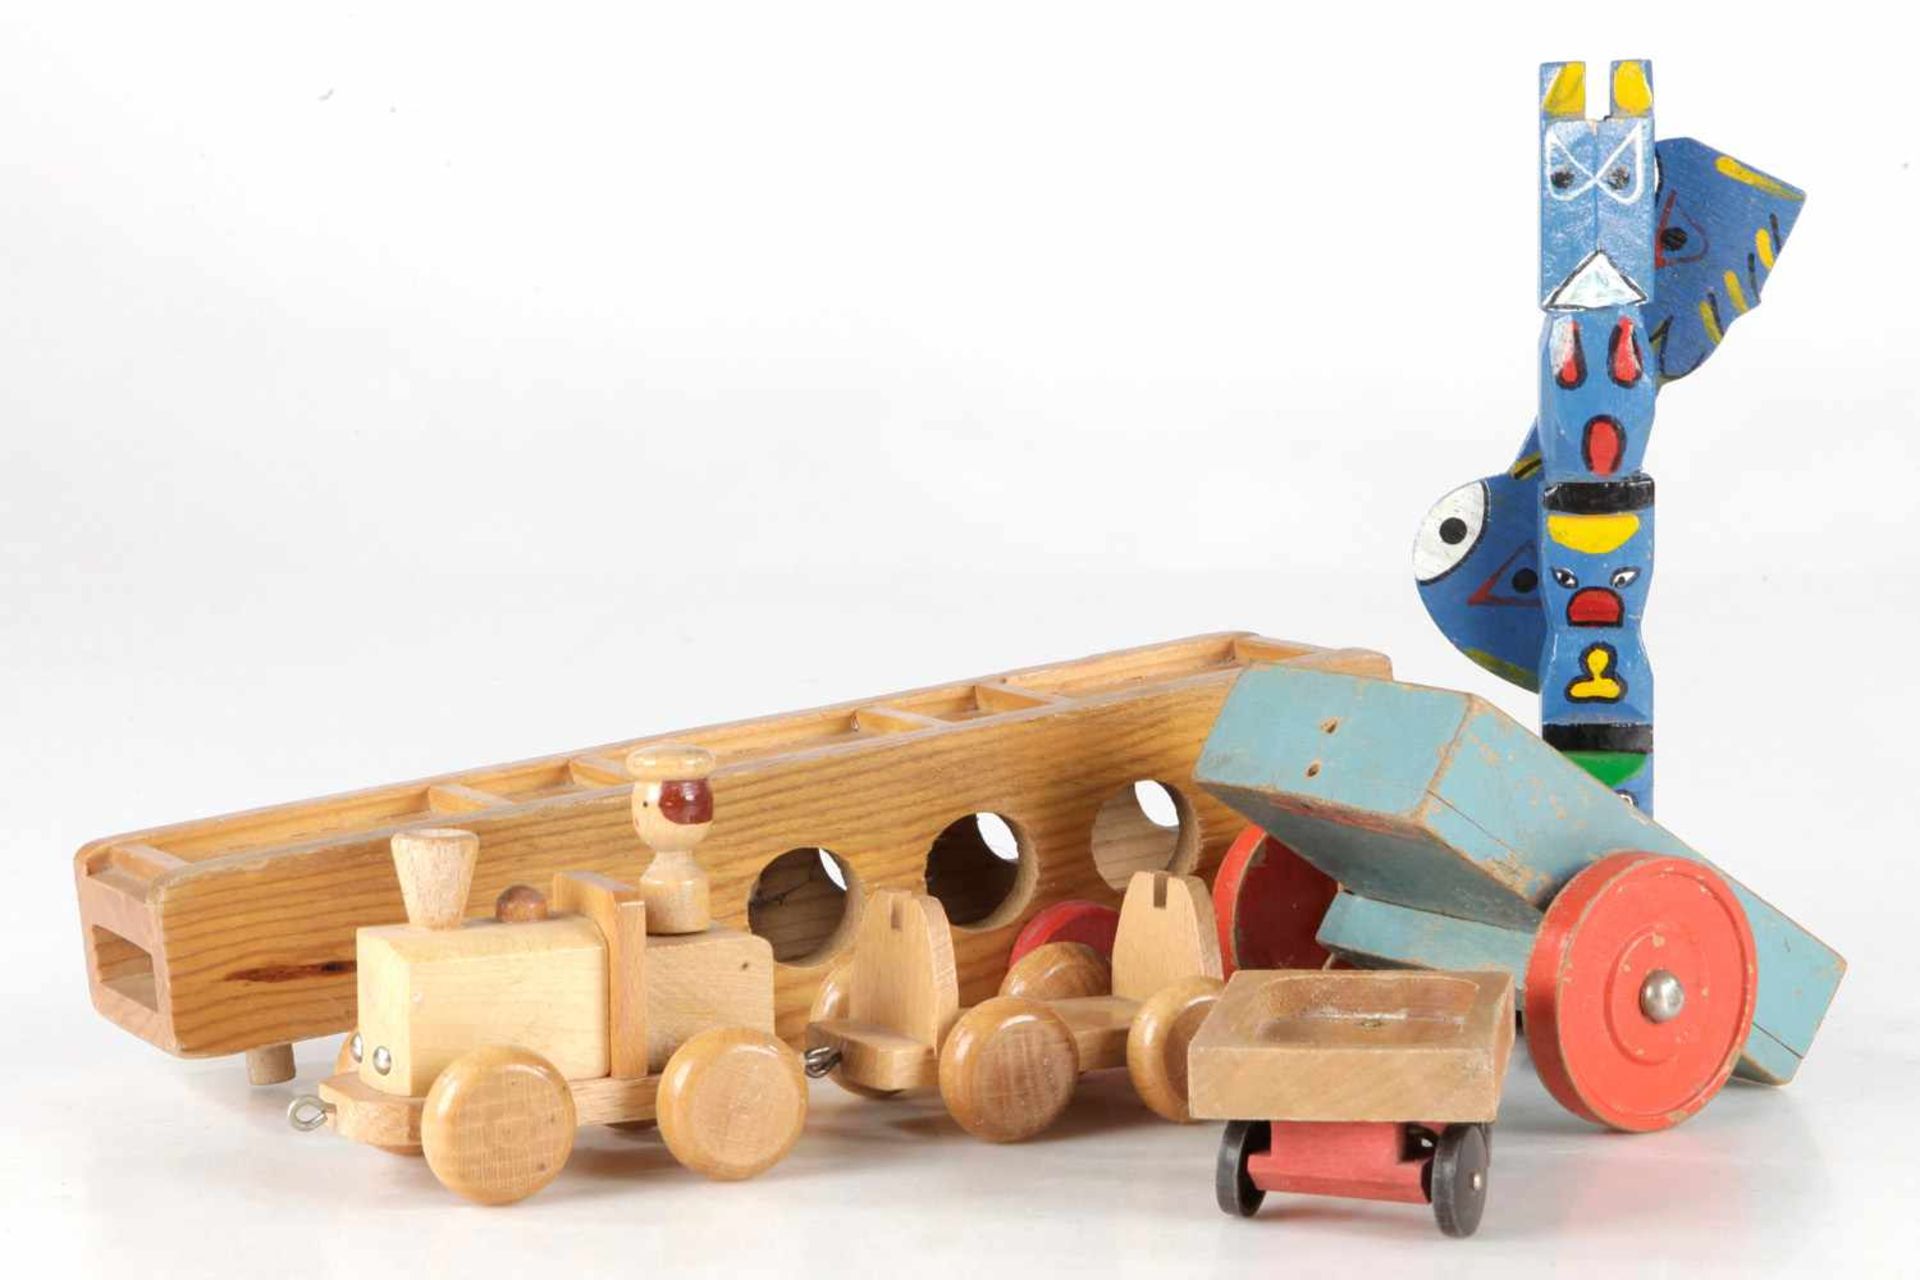 Konv. ca. 20 Teile versch. Holzspielzeug, dabei Eisenbahn, Autotransporter und Totempfahl, bespielt